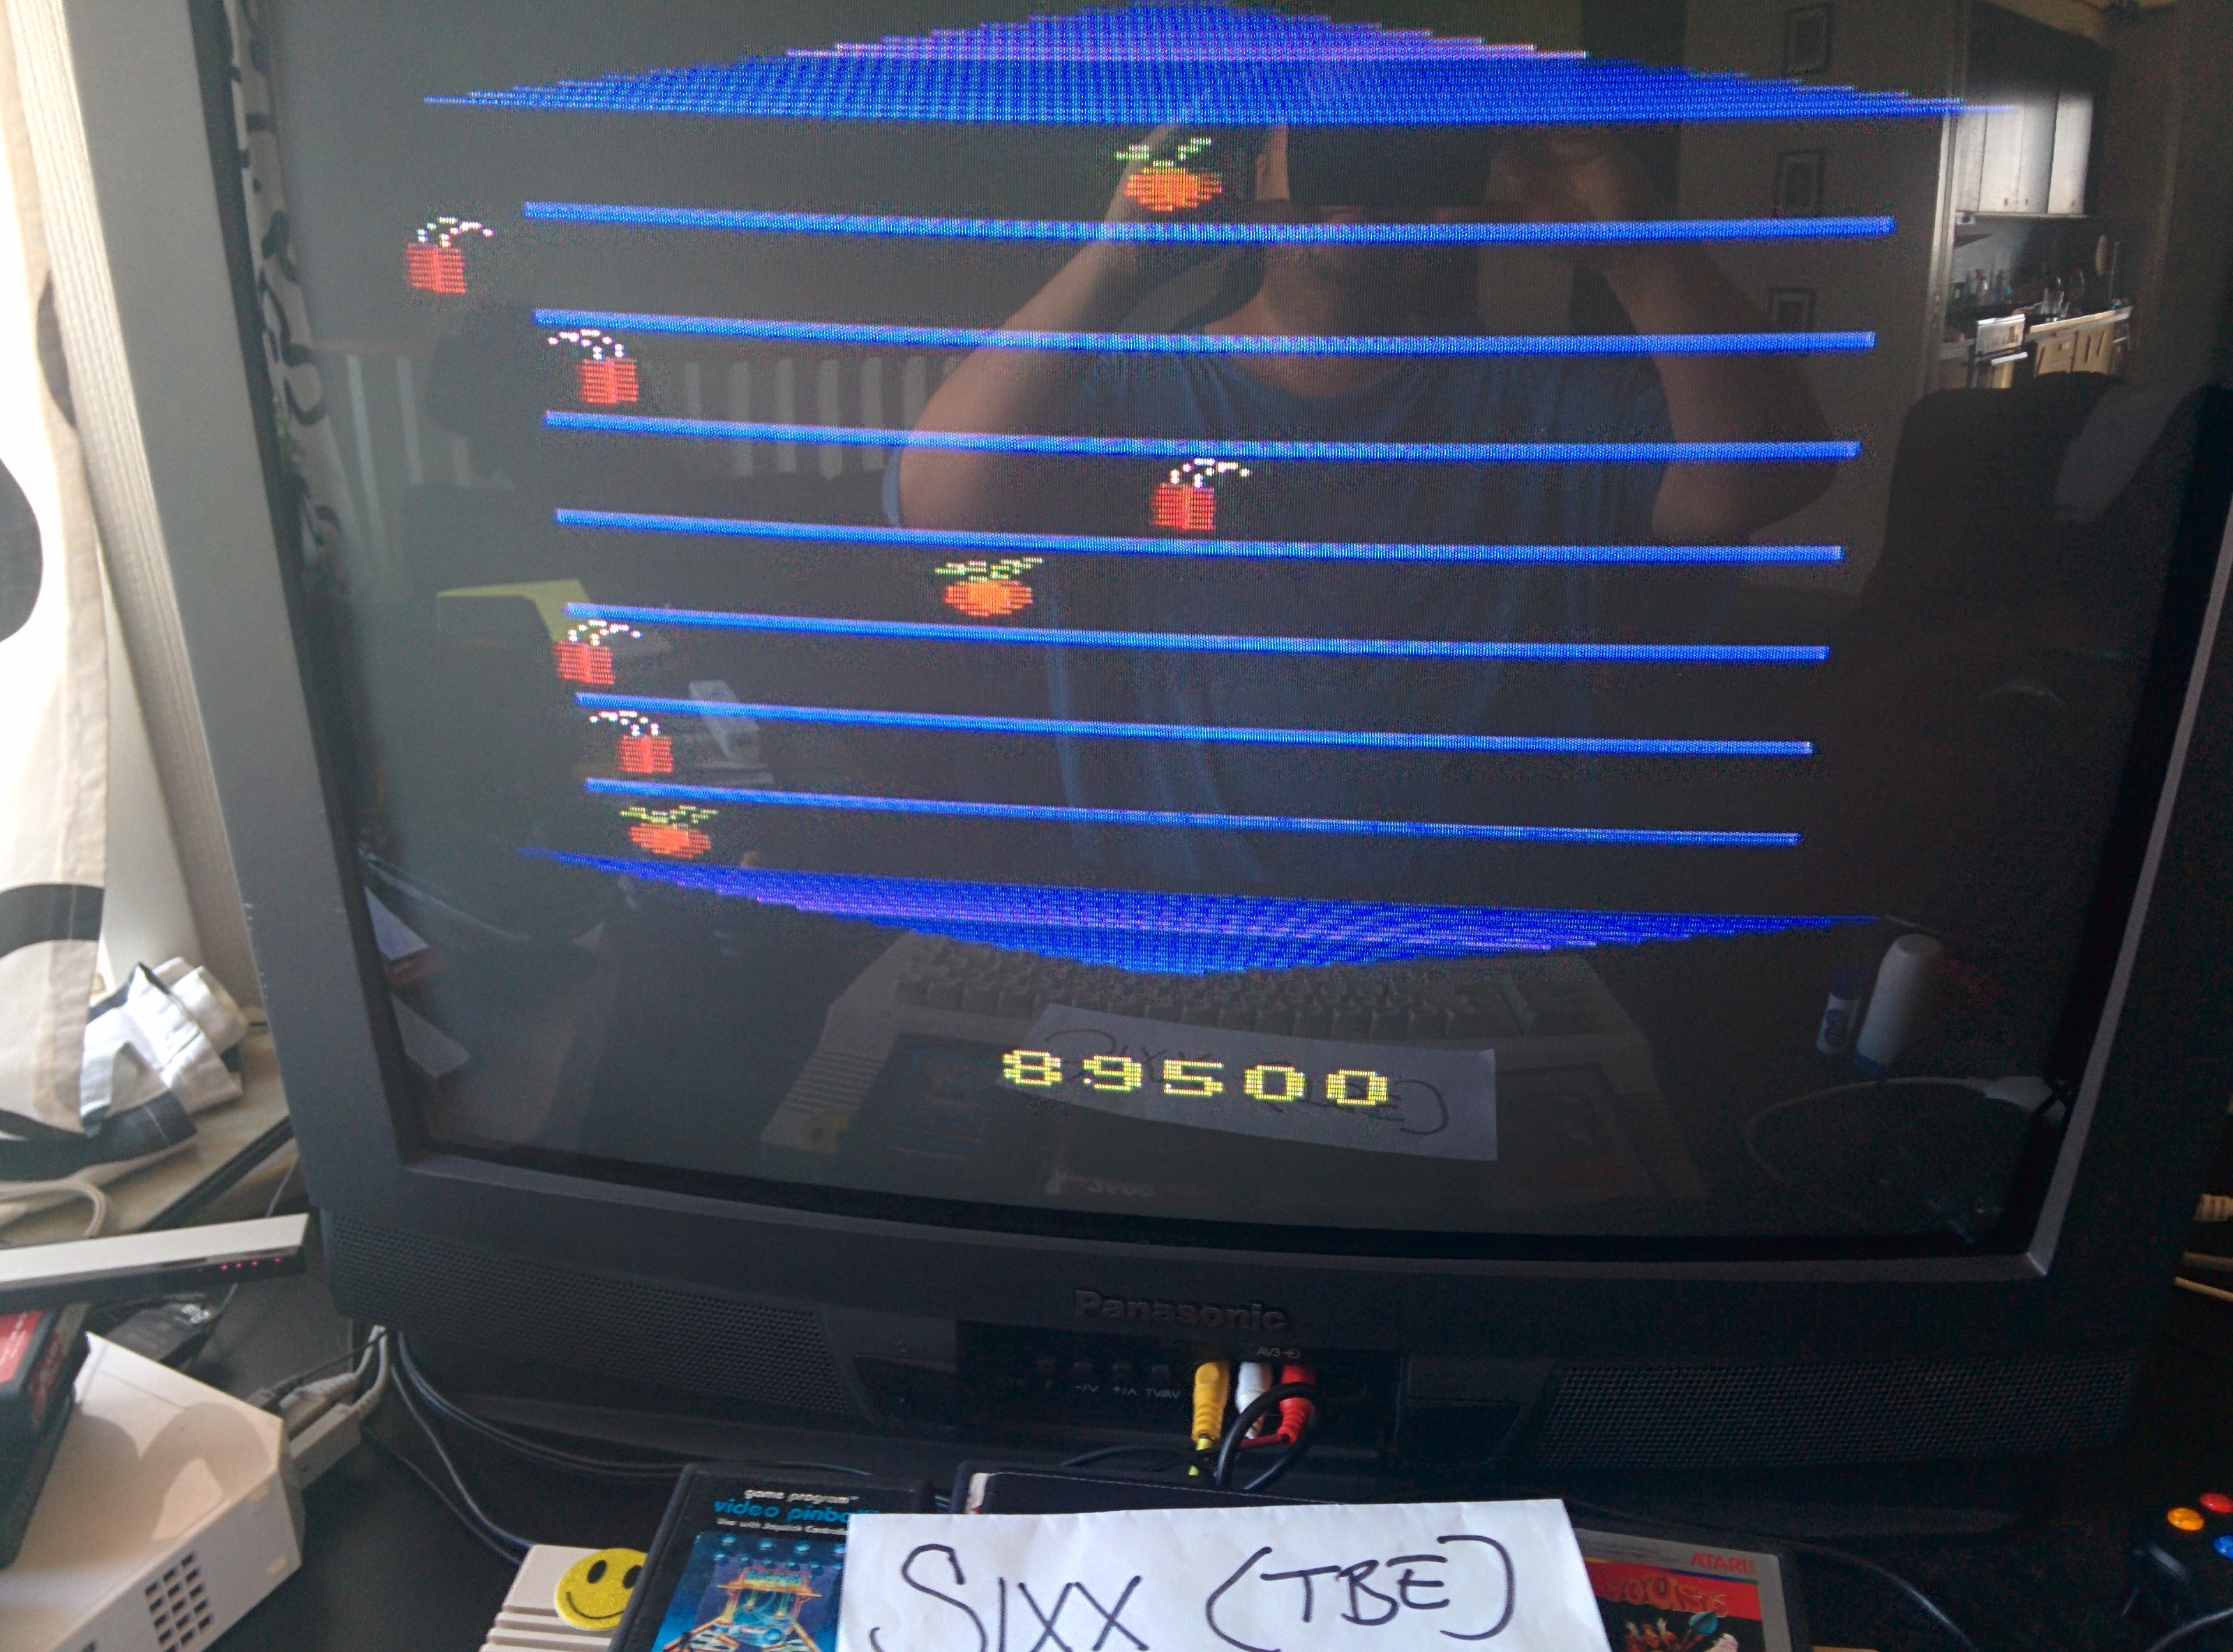 Sixx: Taz (Atari 2600 Emulated) 89,500 points on 2014-07-22 05:30:08